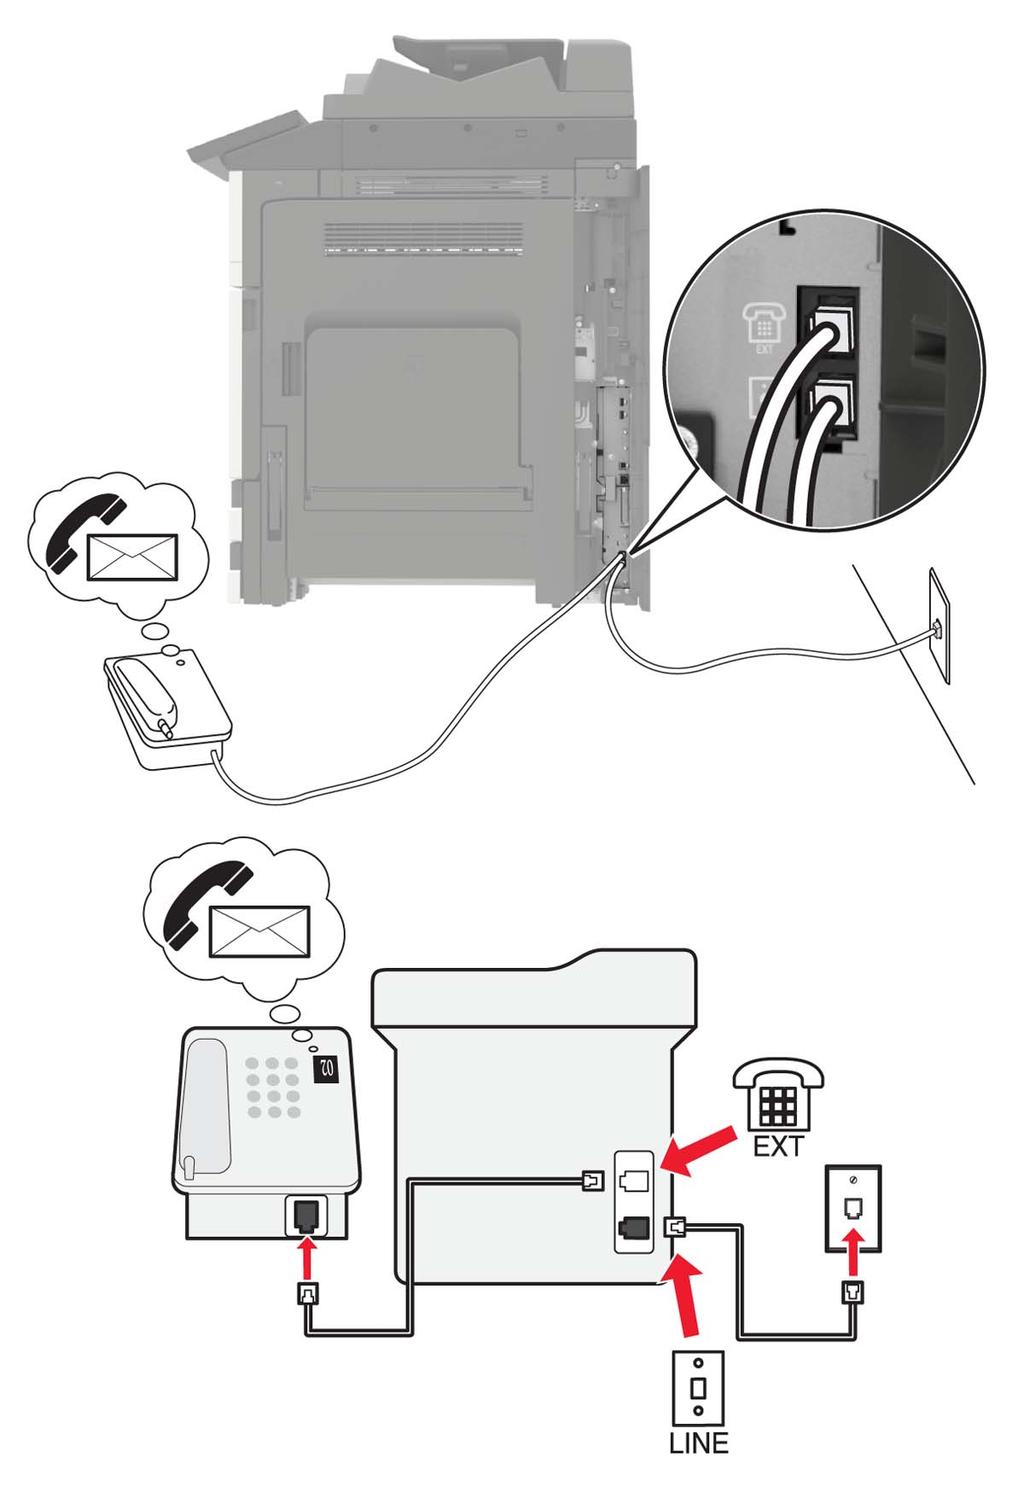 Faks alma/gönderme 44 Kurulum 3: Yazıcı, hattı sesli posta hizmeti aboneliği olan bir telefonla paylaşıyor 1 Telefon kablosunun bir ucunu yazıcının arka tarafındaki hat bağlantı noktasına takın.